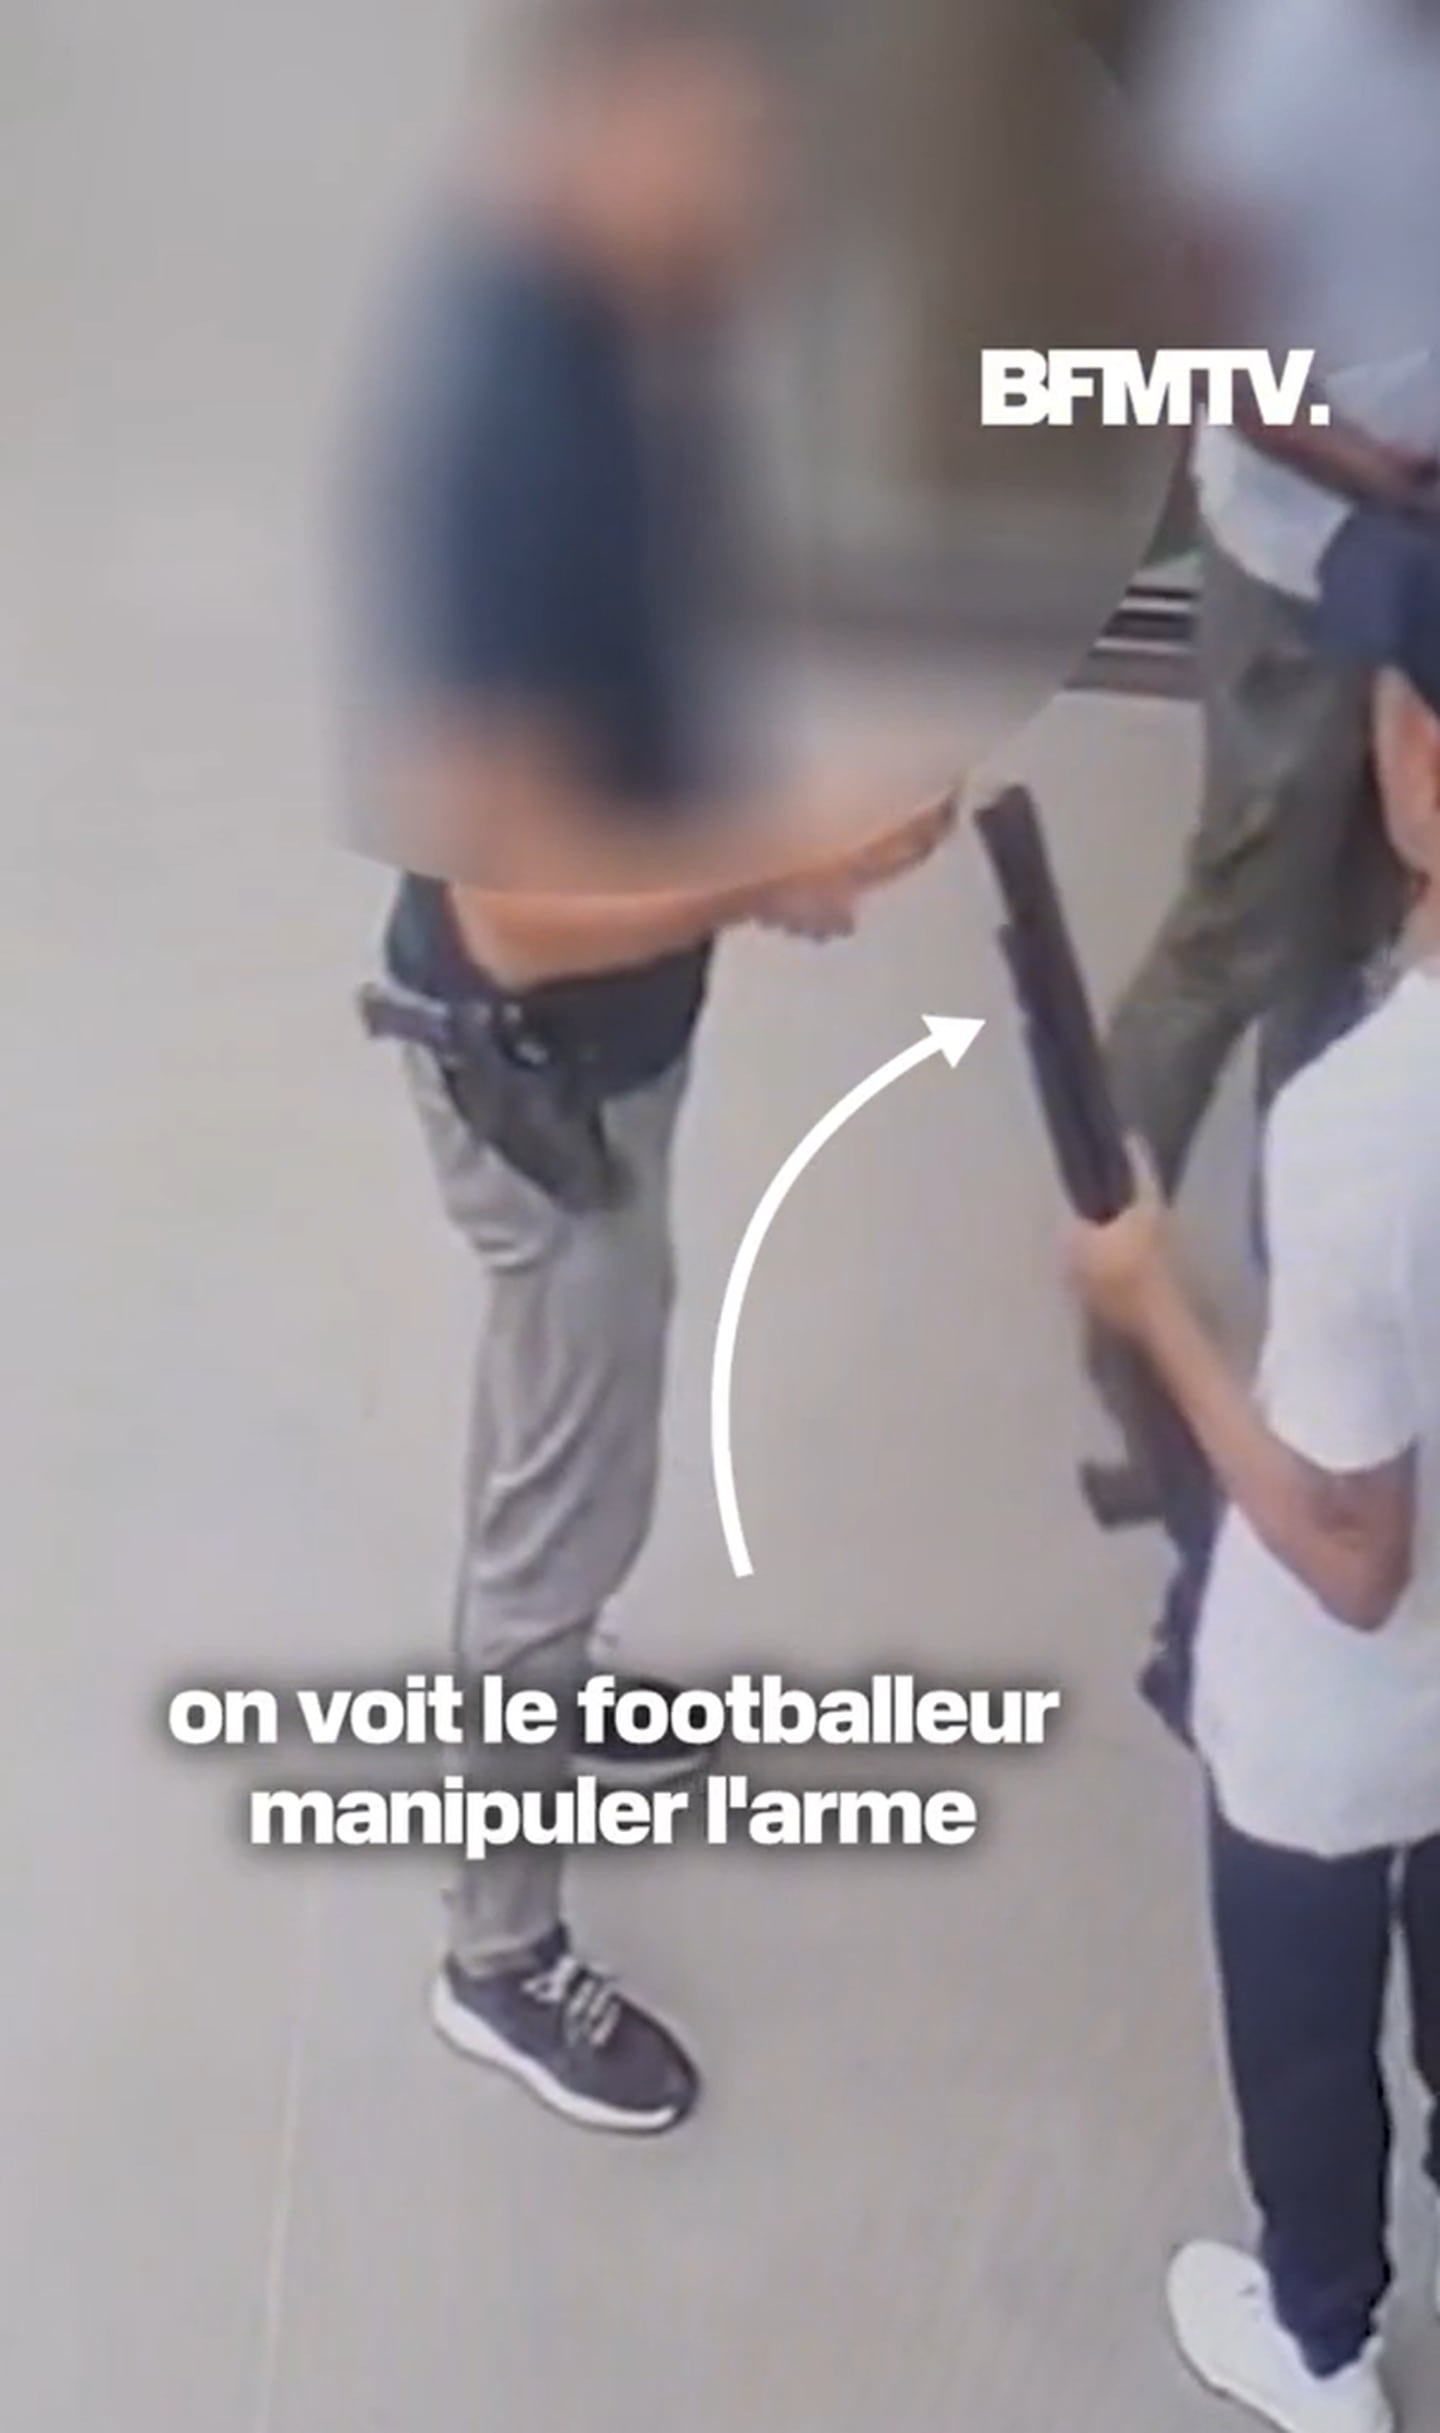 Keylor Navas denunciado por exempleado en Francia. Imagen: pantallazo de BFMTV. El Financiero